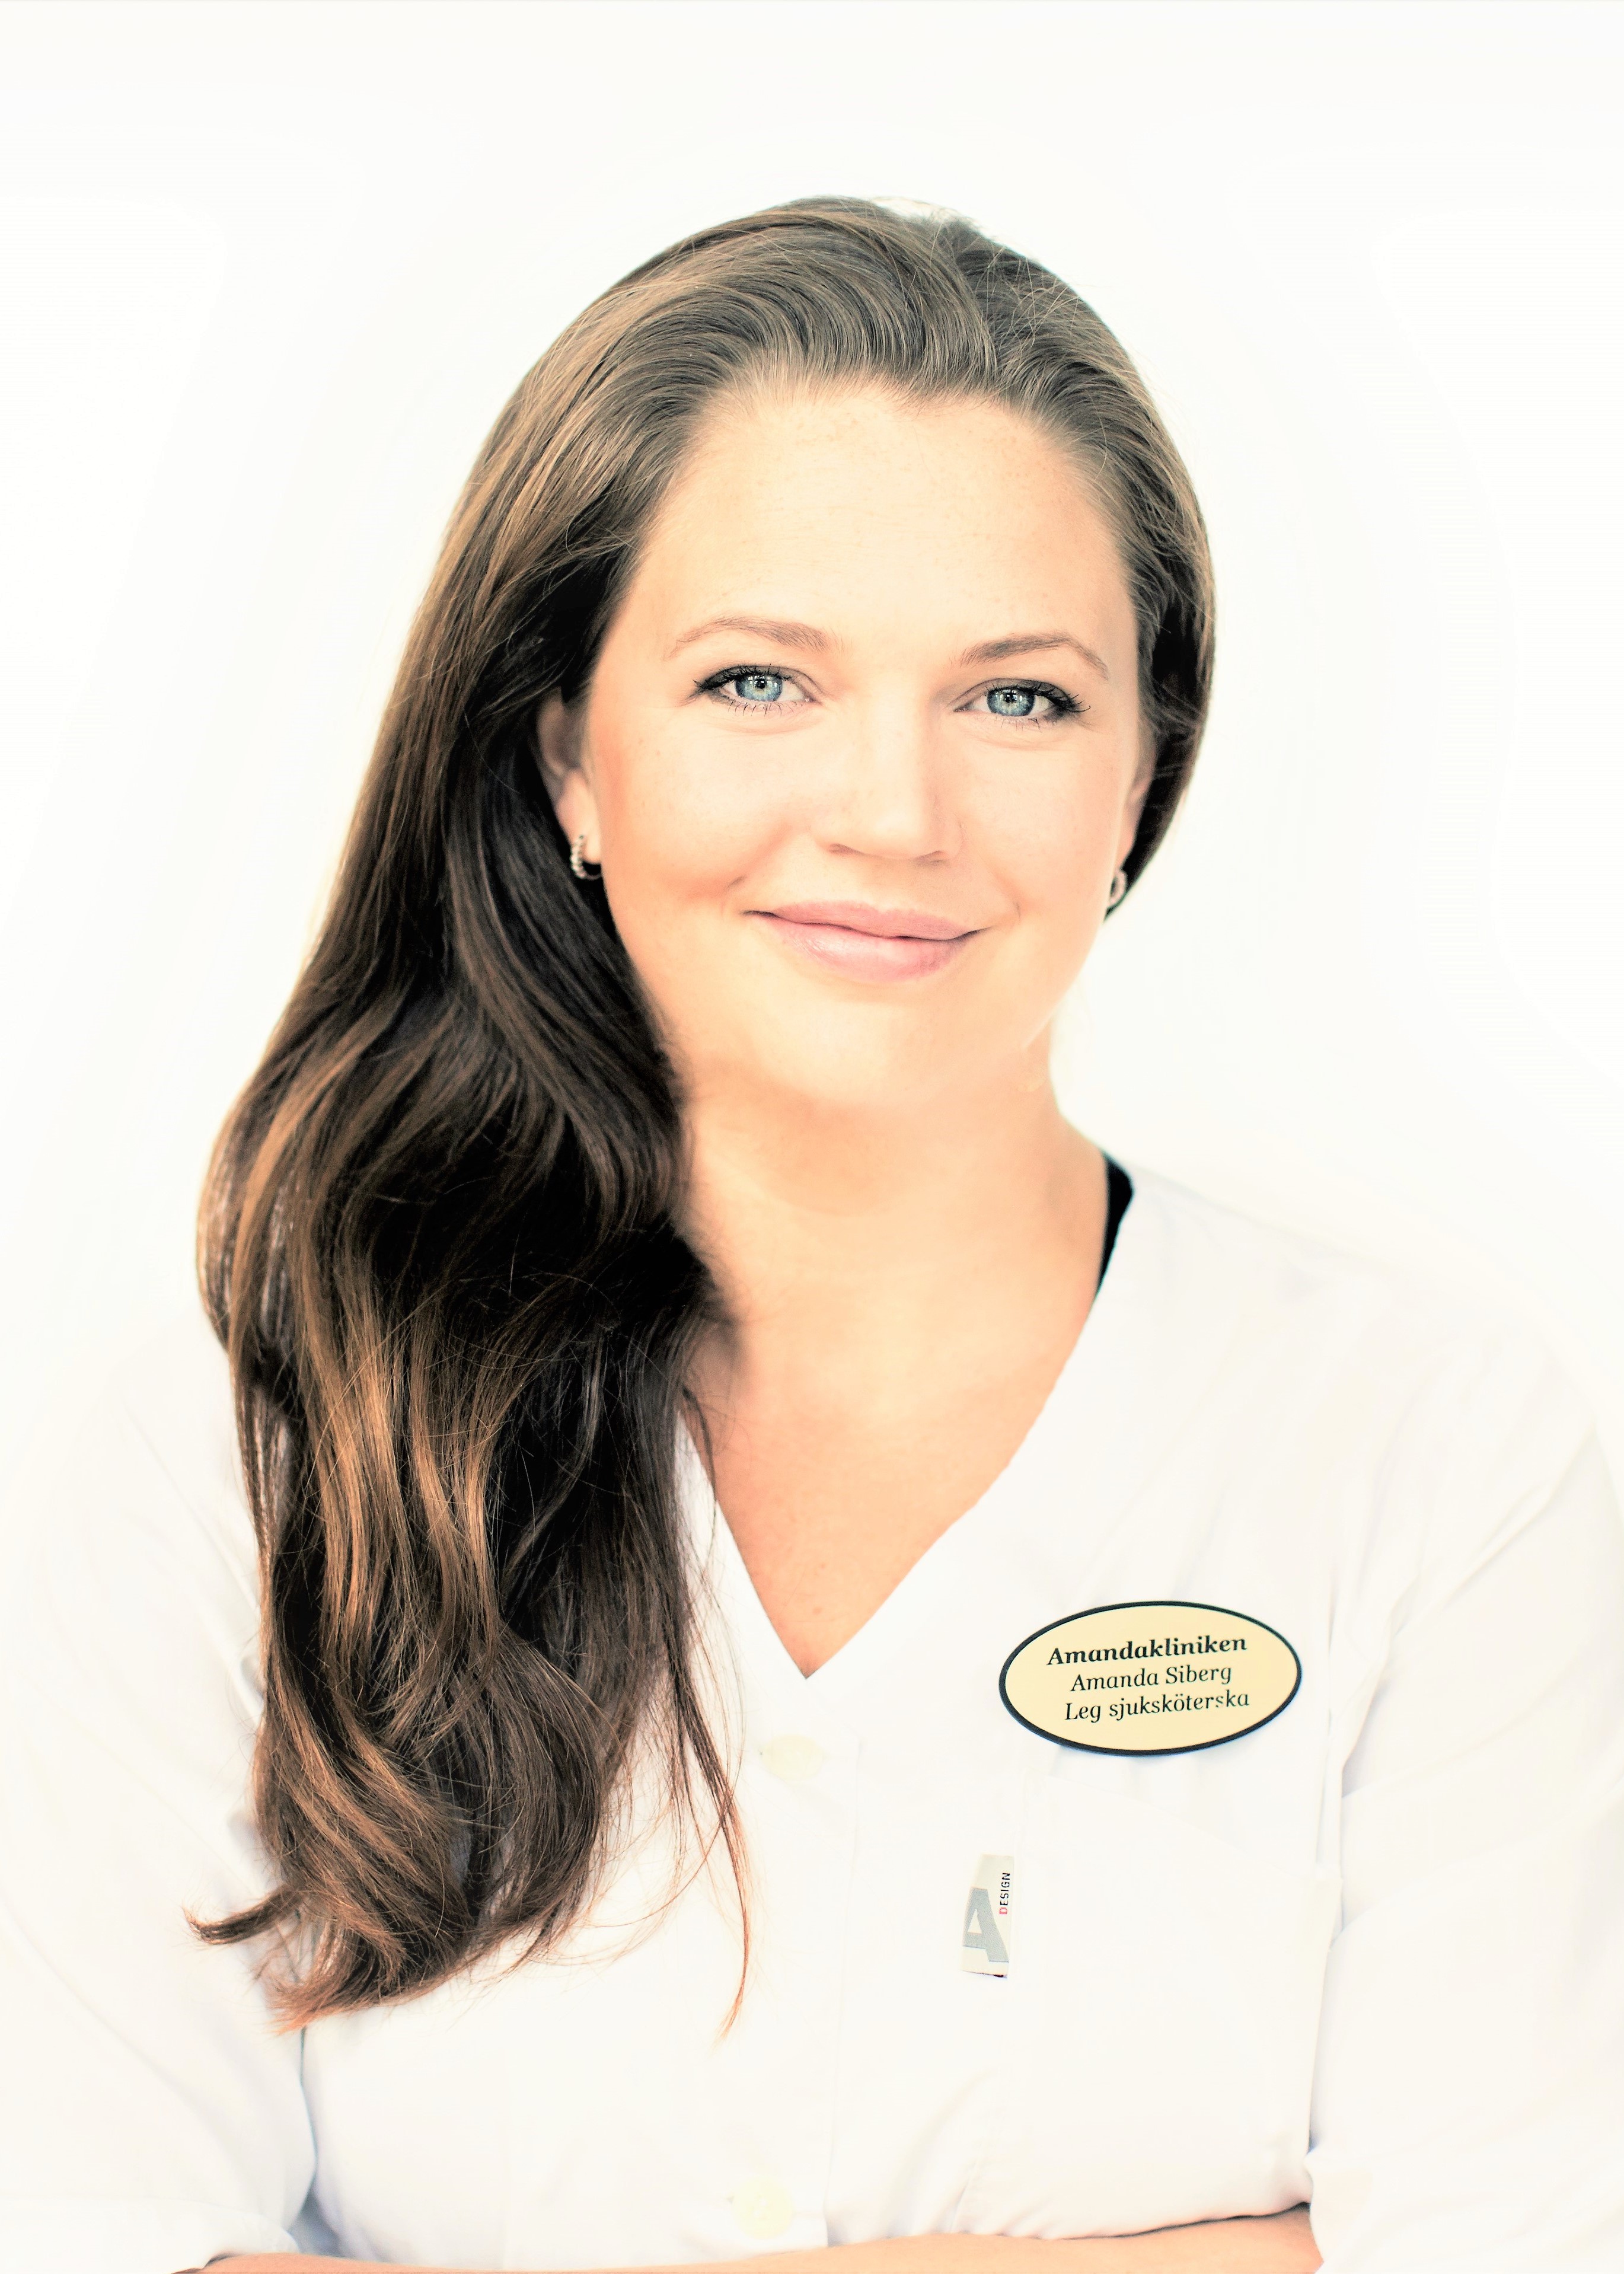 Amanda Siberg är legitimerad sjuksköterska och specialist inom estetiska behandlingar utan kirurgiska ingrepp